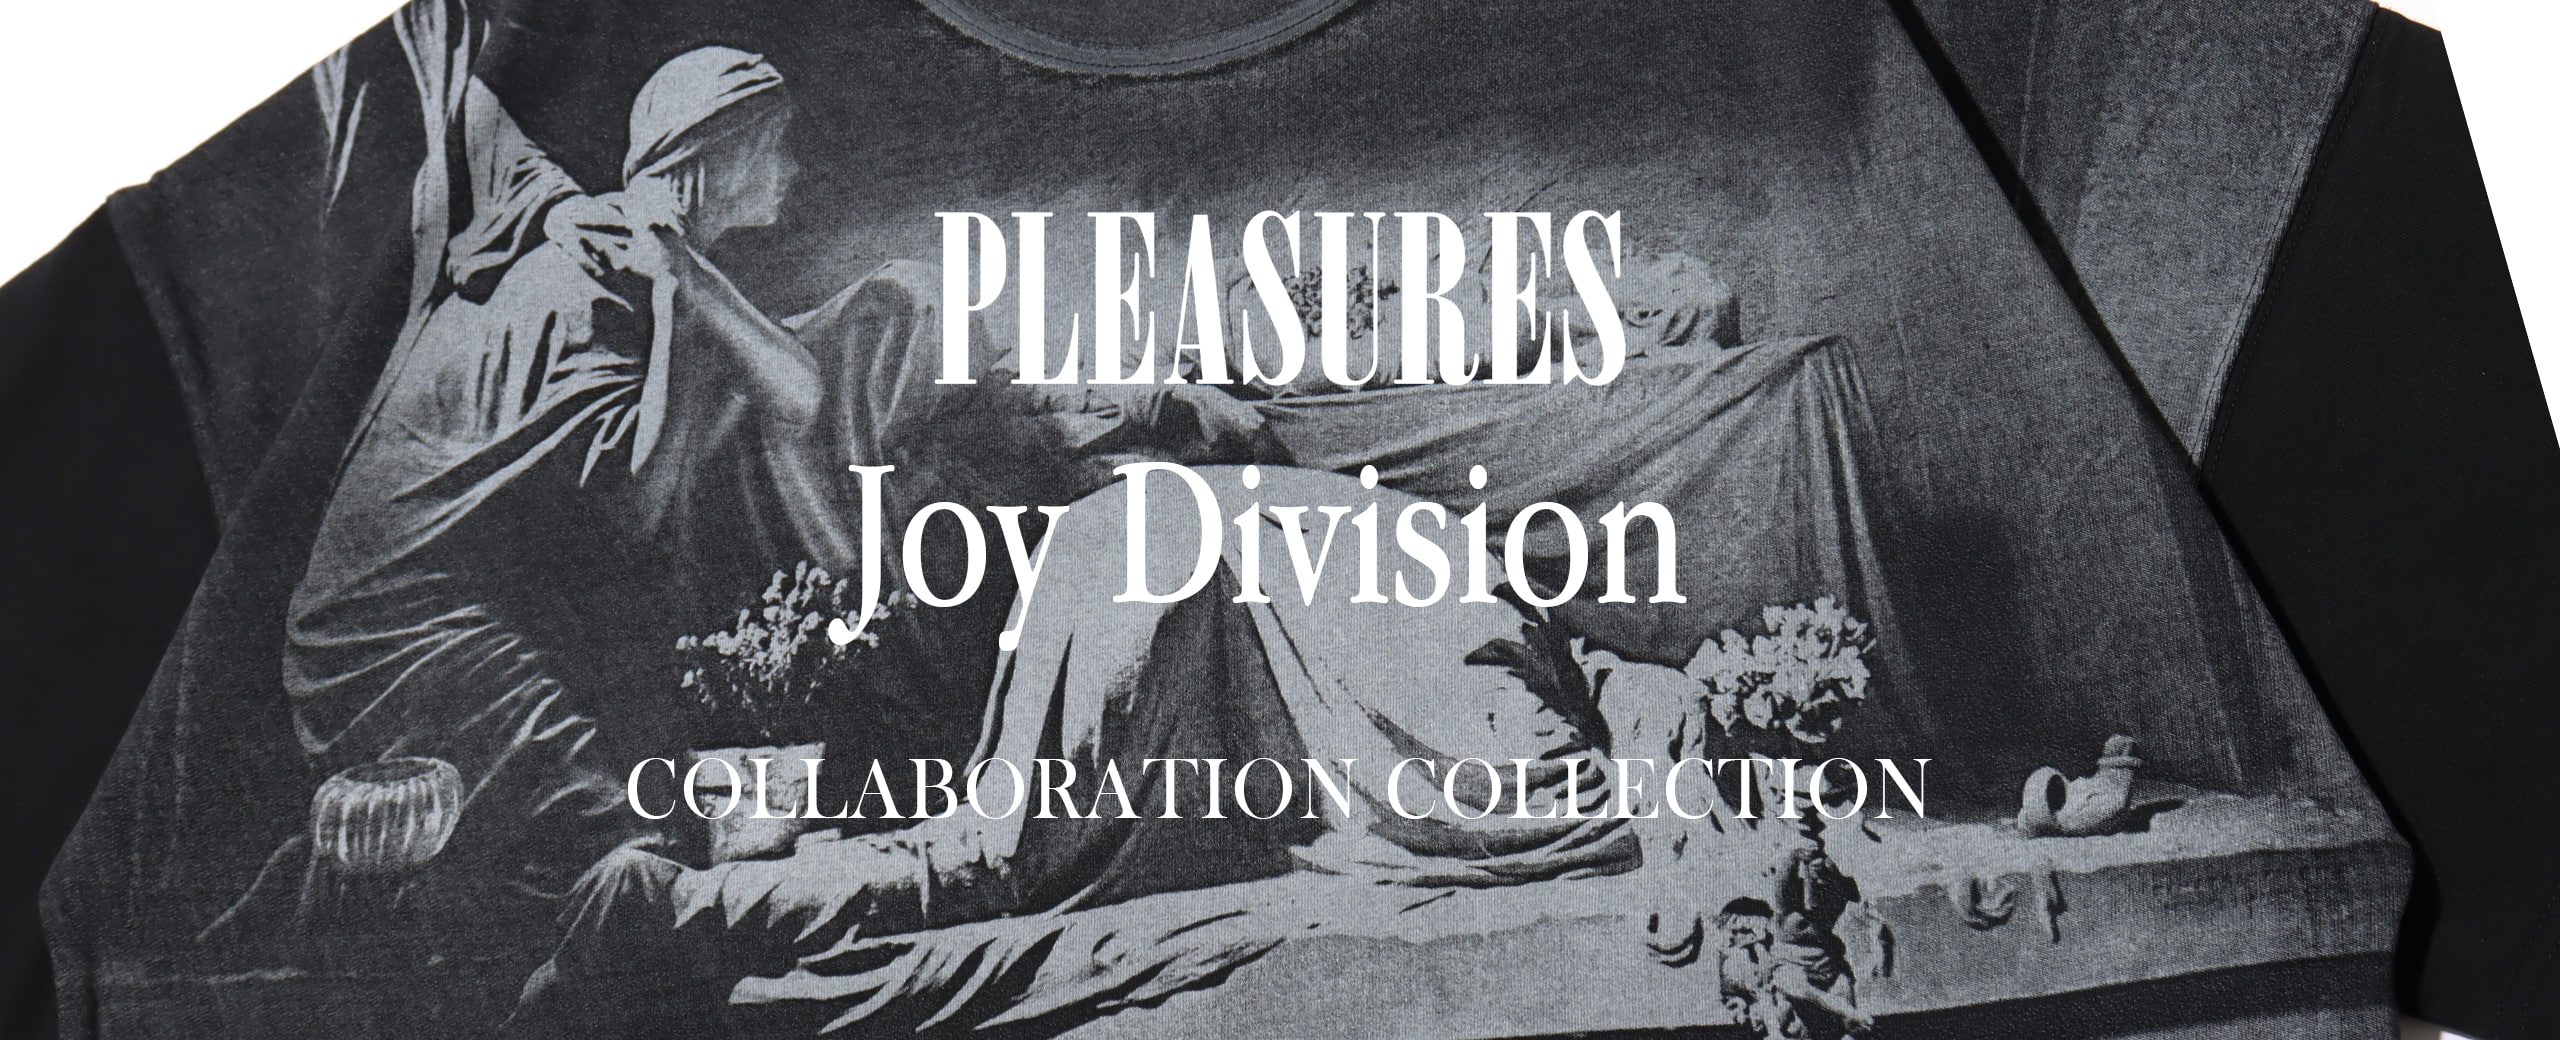 "PLEASURES x JOY DIVISION collaboration collection"